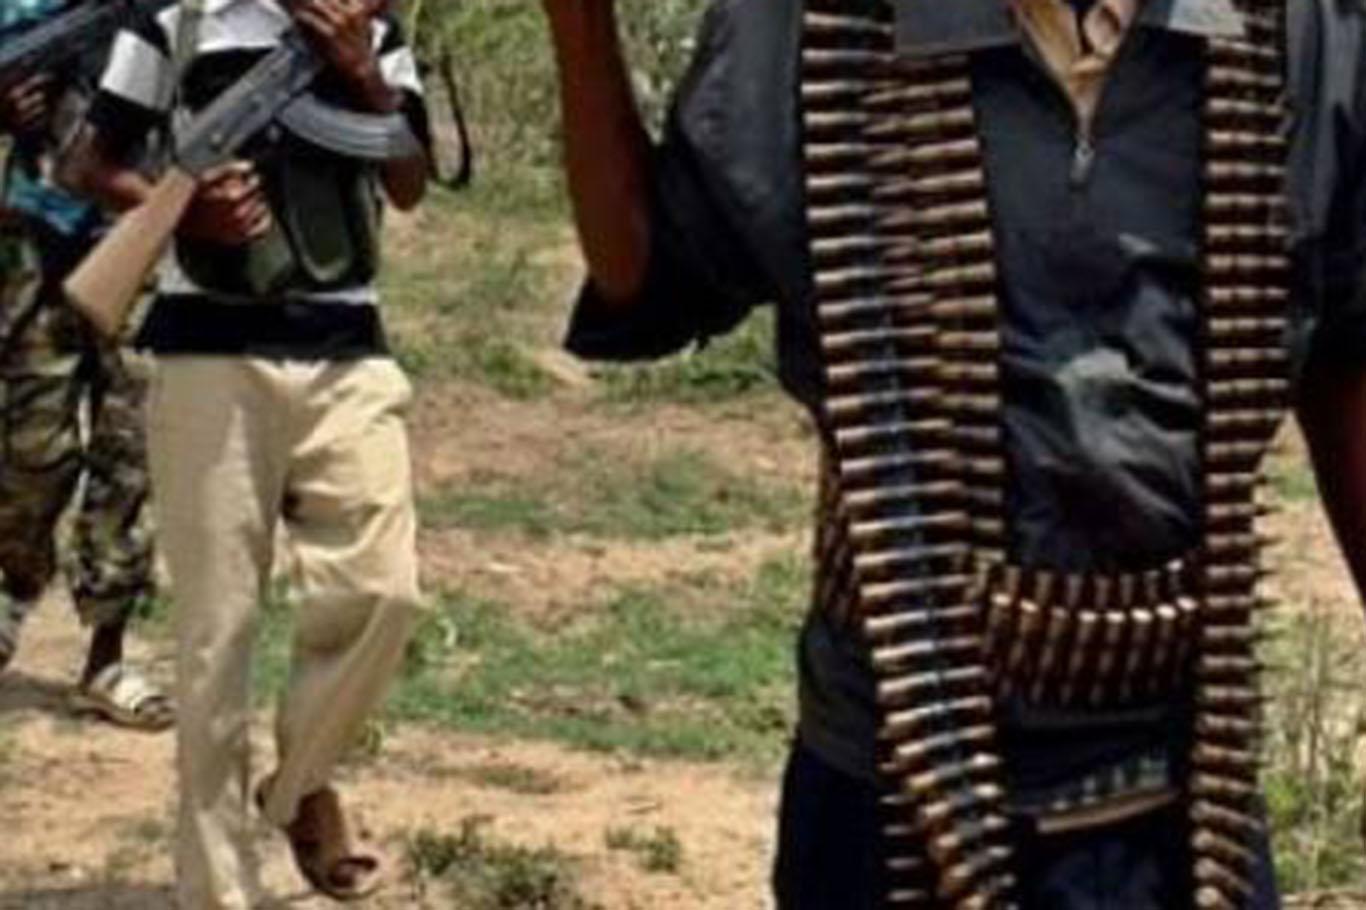 Nijerya ordusu 35 Boko Haram mensubunu öldürdü